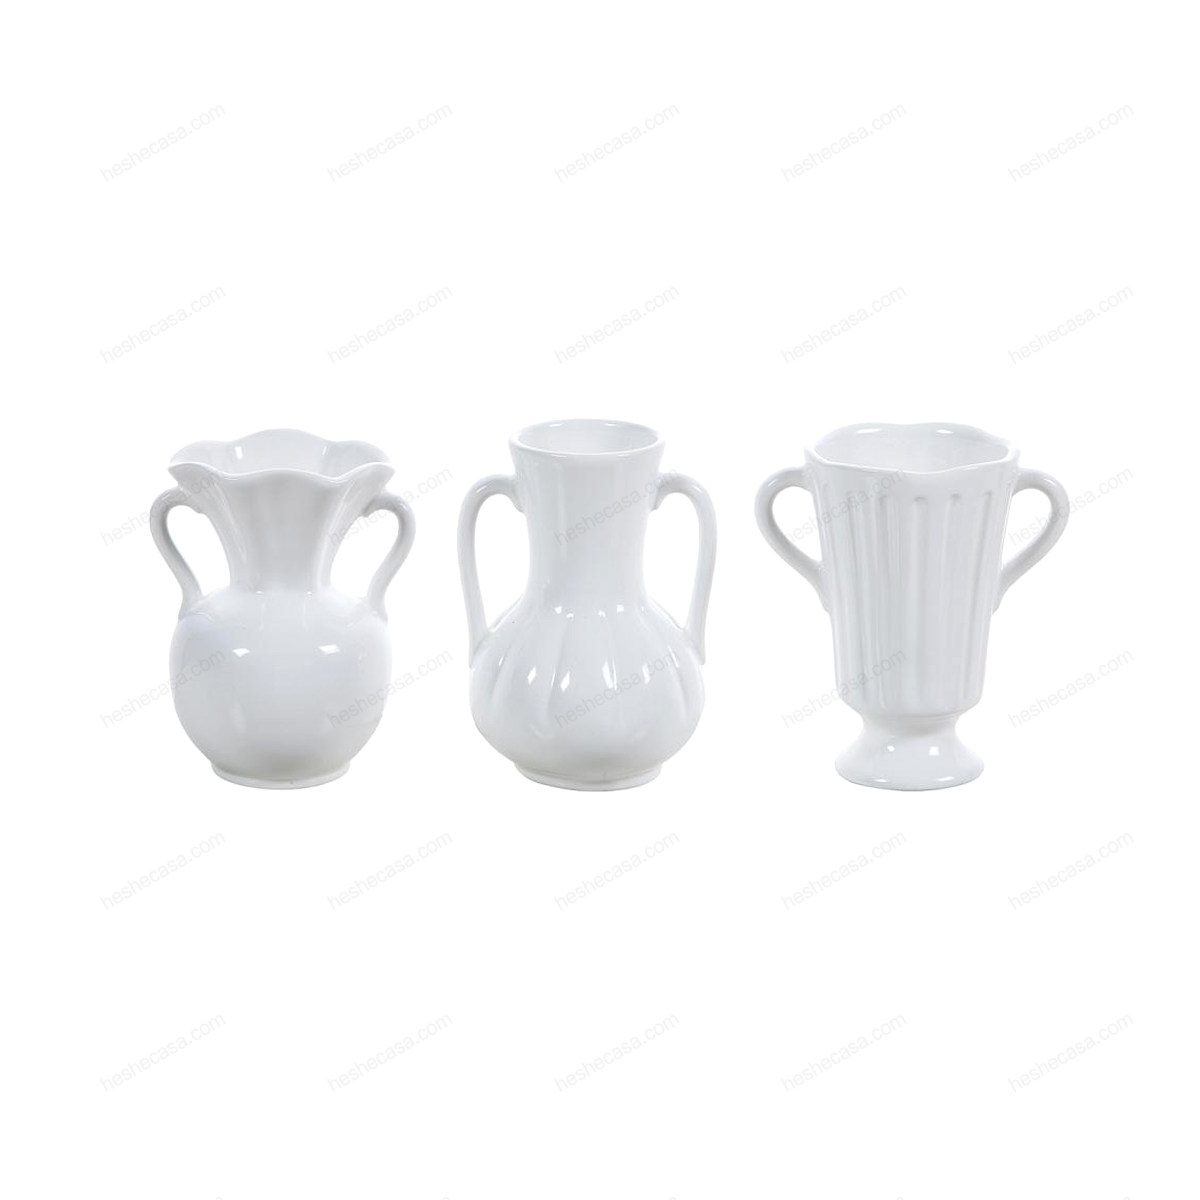 Mettelene Vase, White, Ceramic花瓶